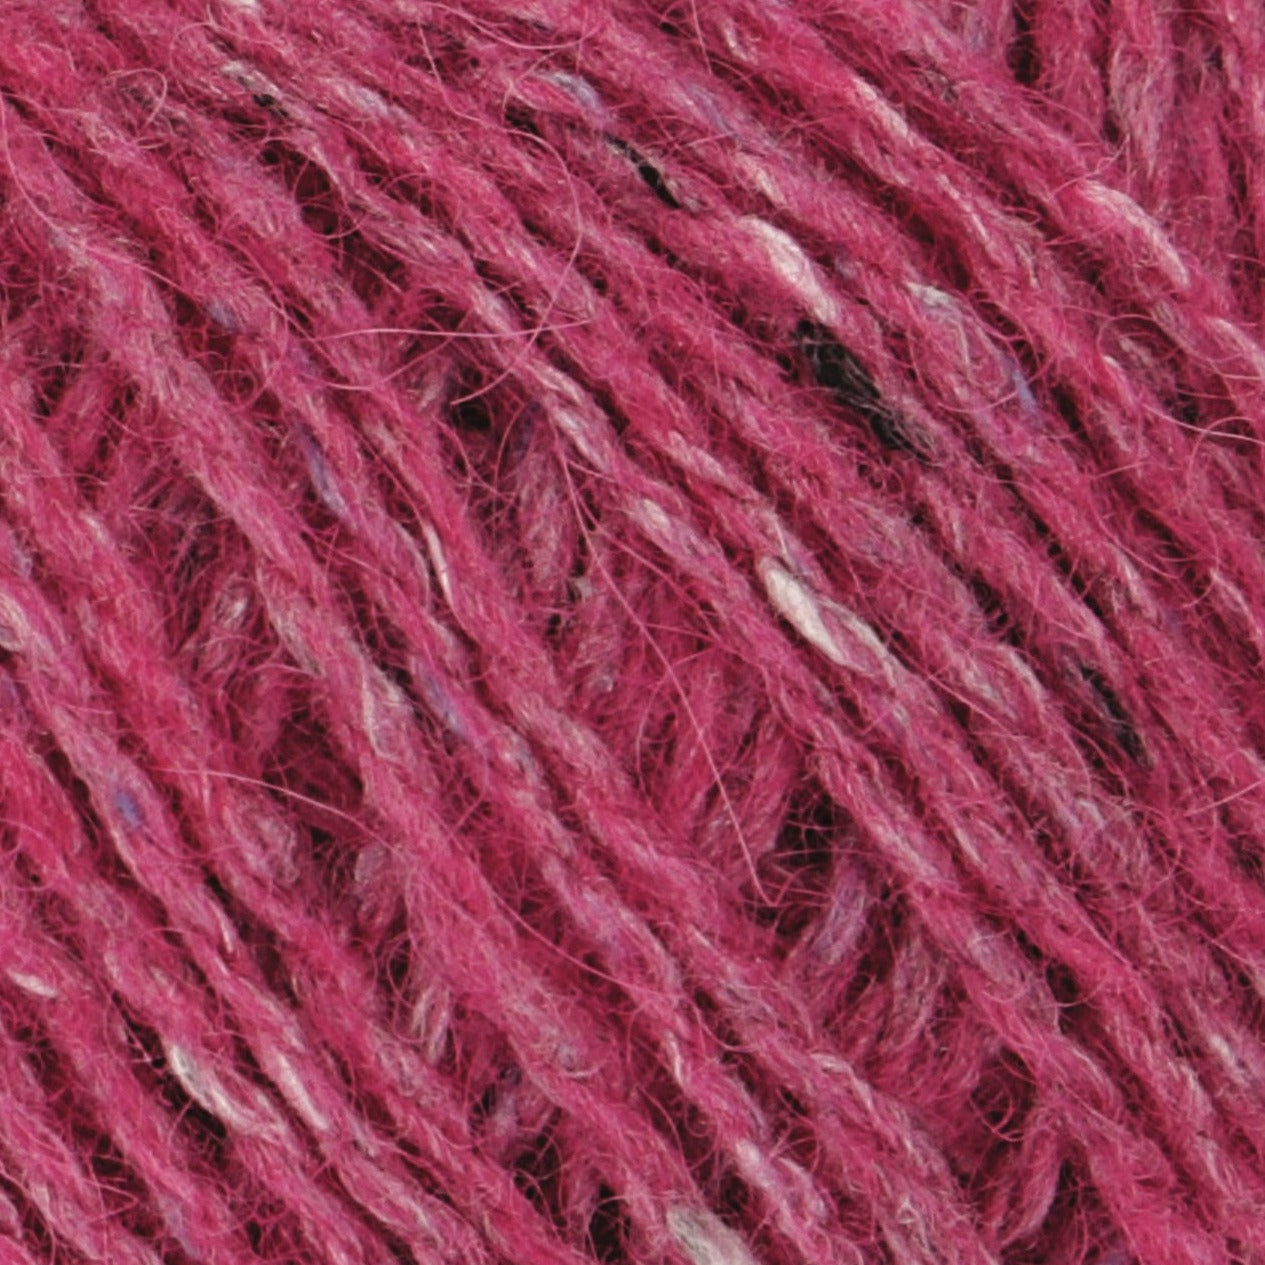 Barbara 200 - Dark pink tweed